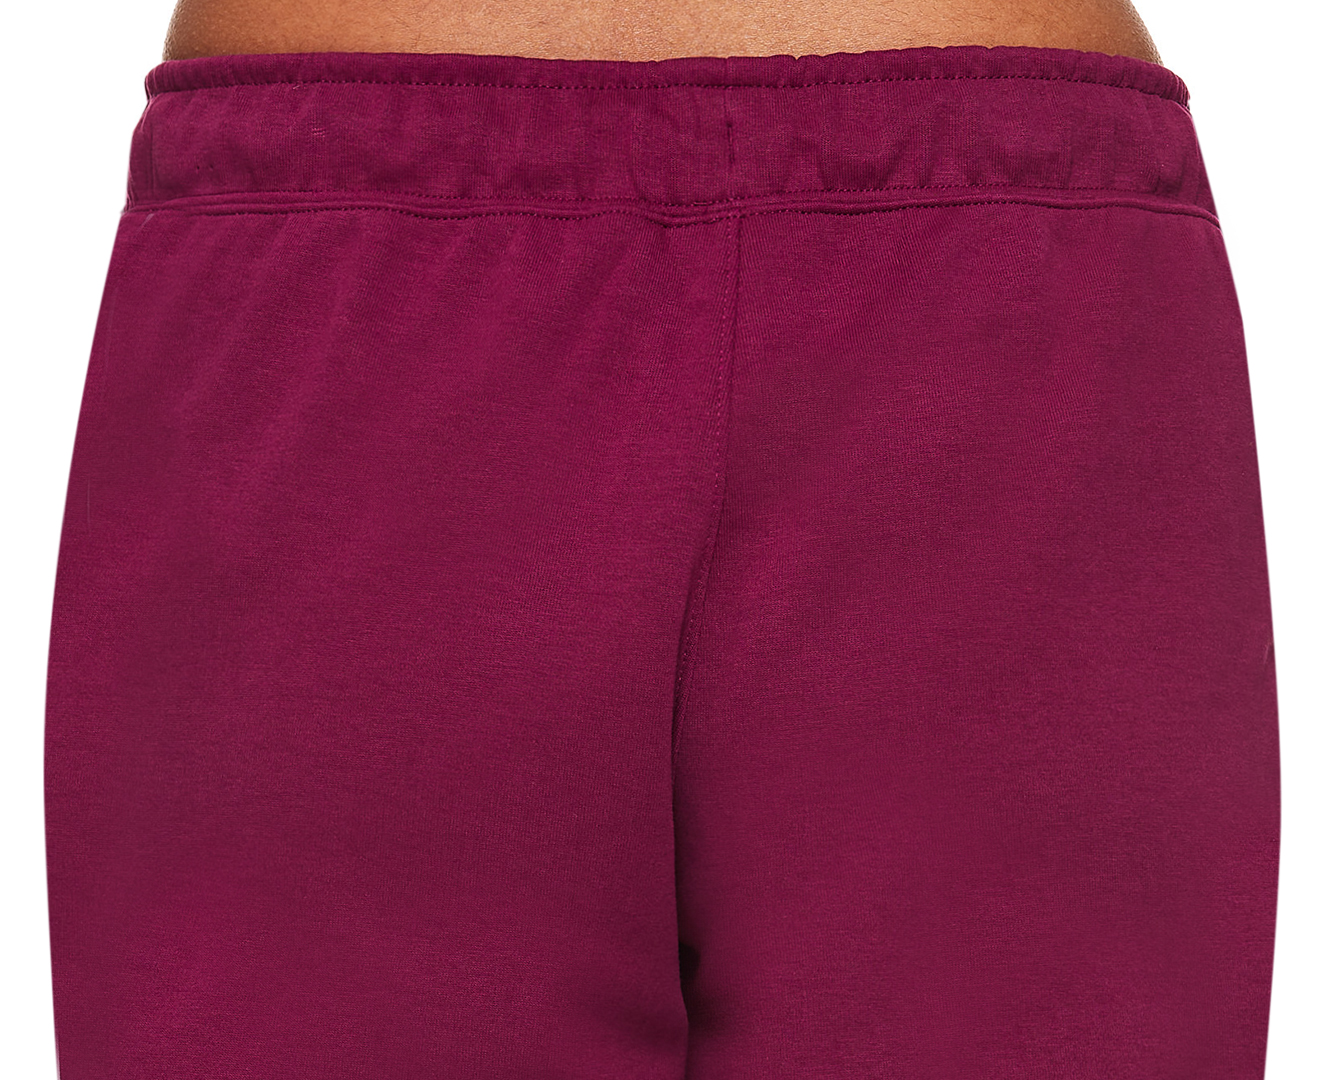 Nike Sportswear Women's Essential Fleece Pants Sangria / Heather